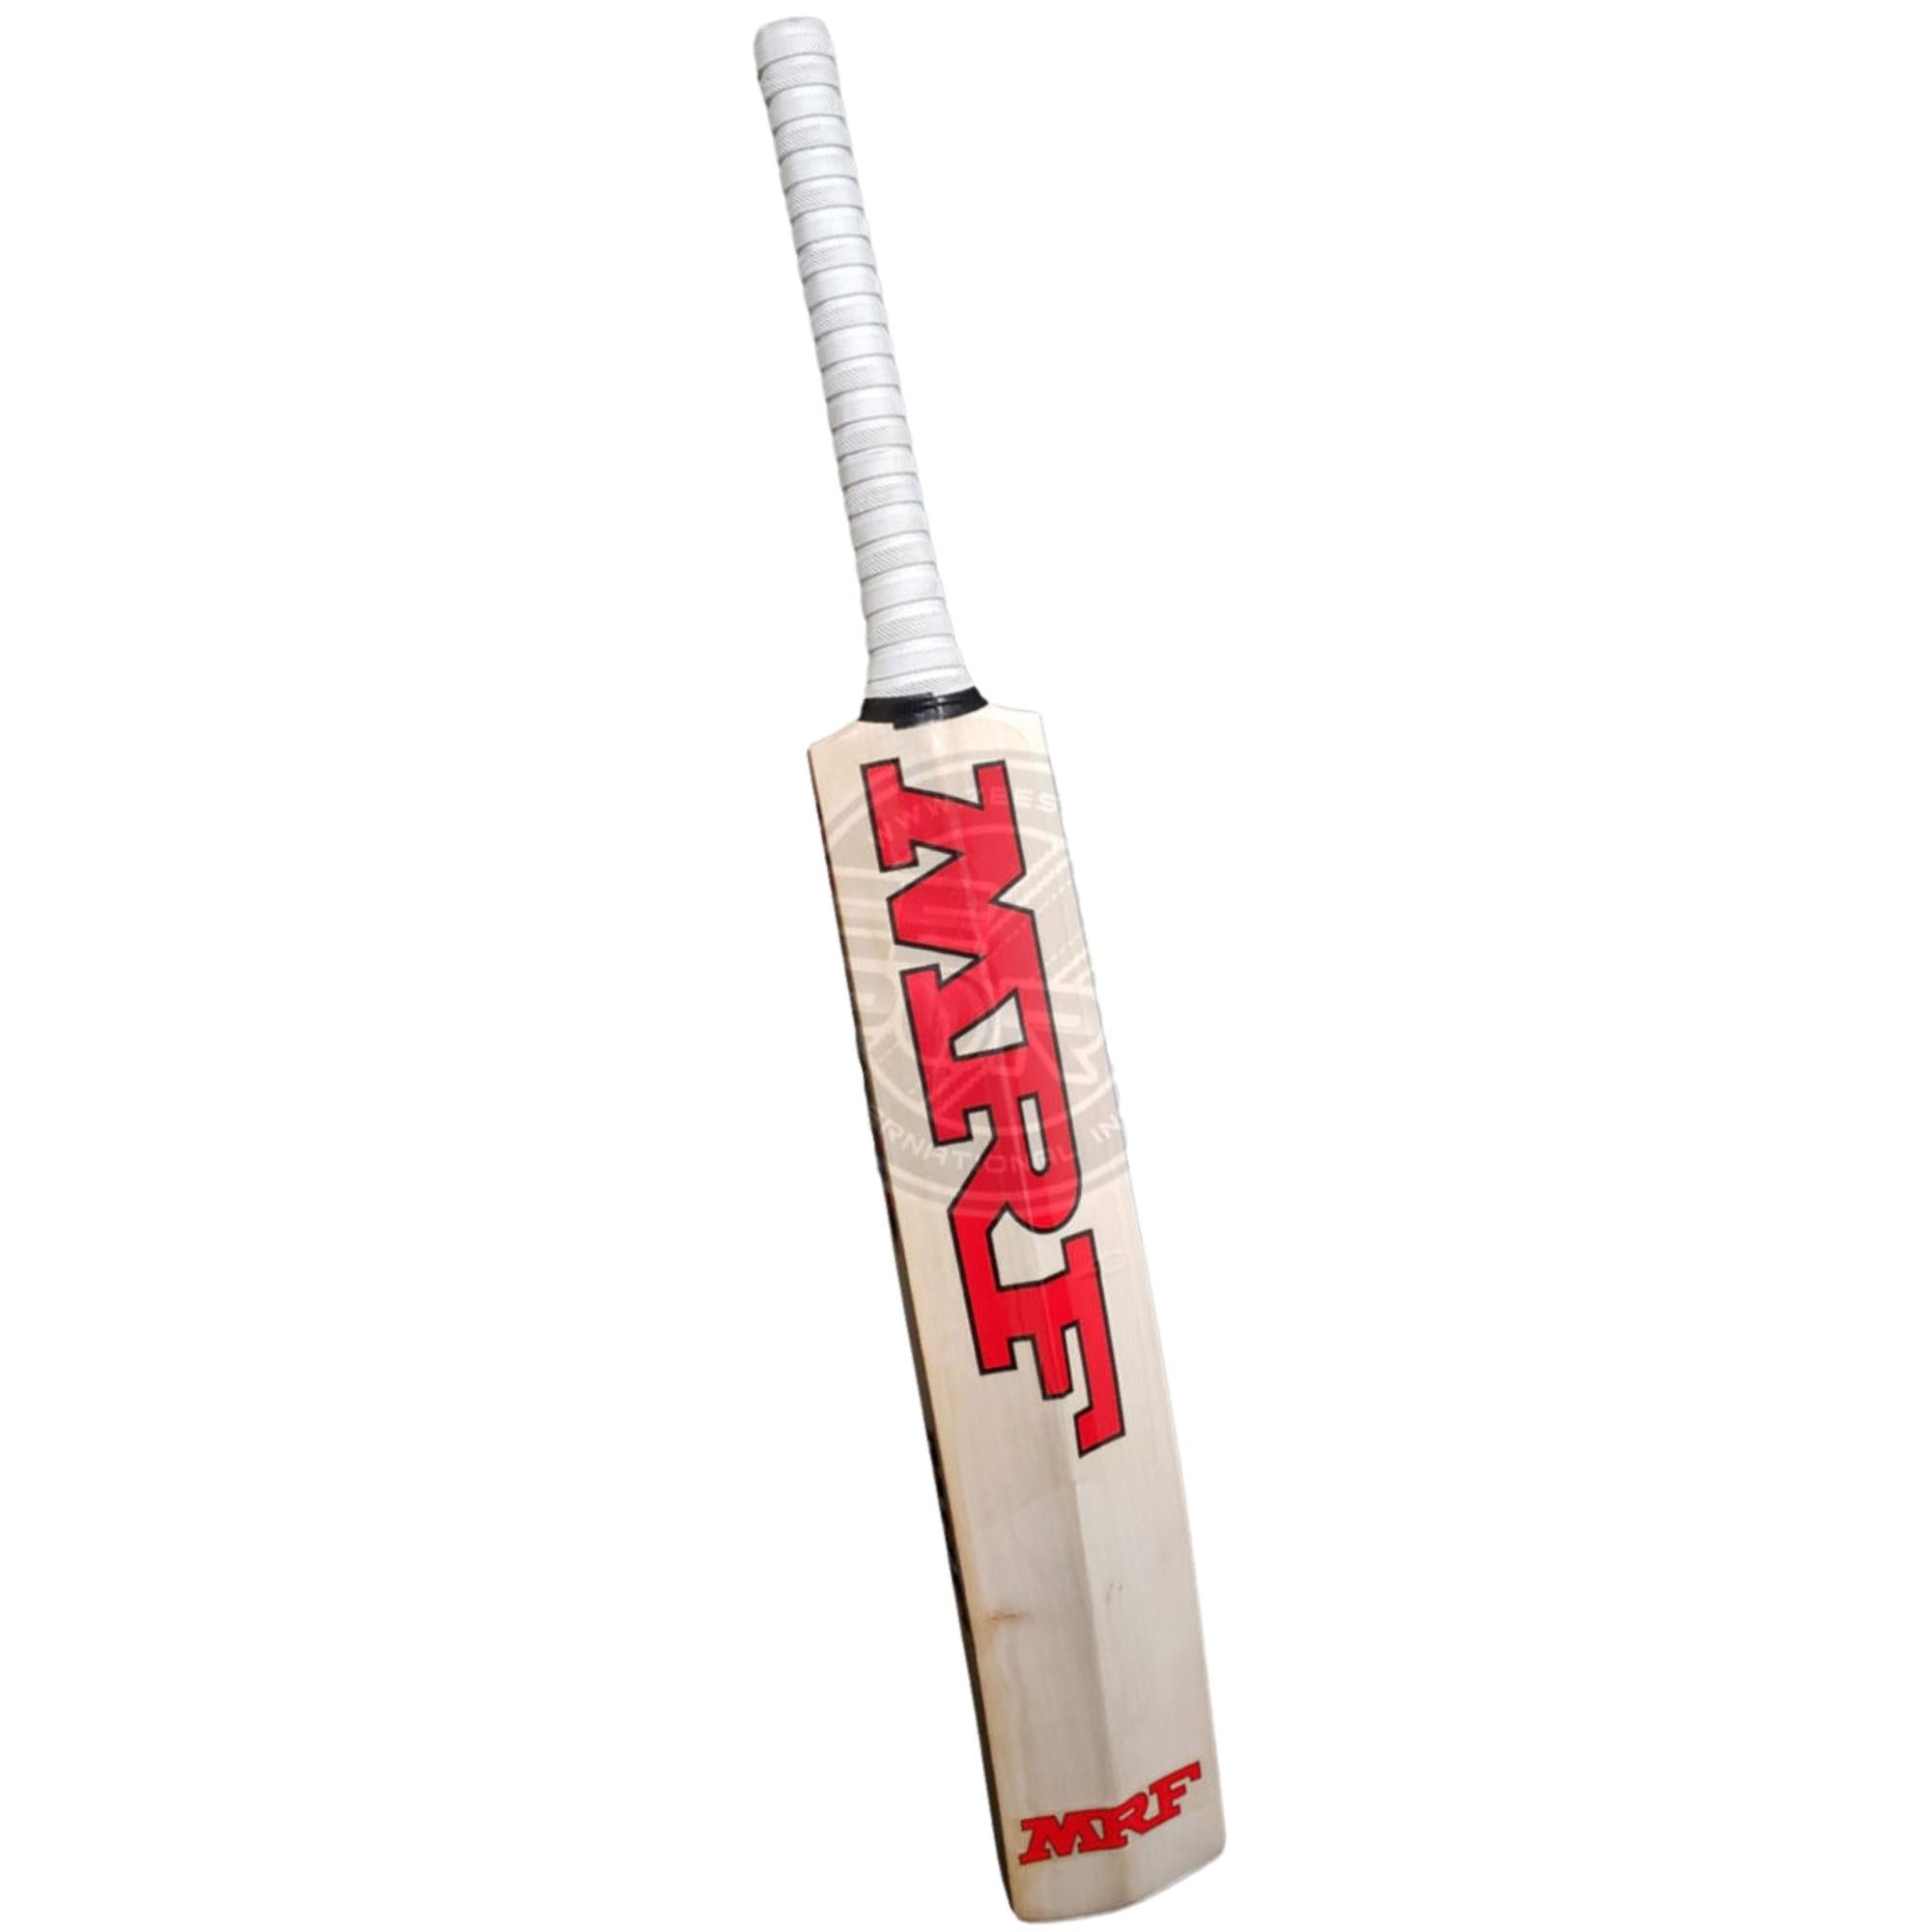 MRF Genuis Elite - AB de Villiers Player's Cricket Bat